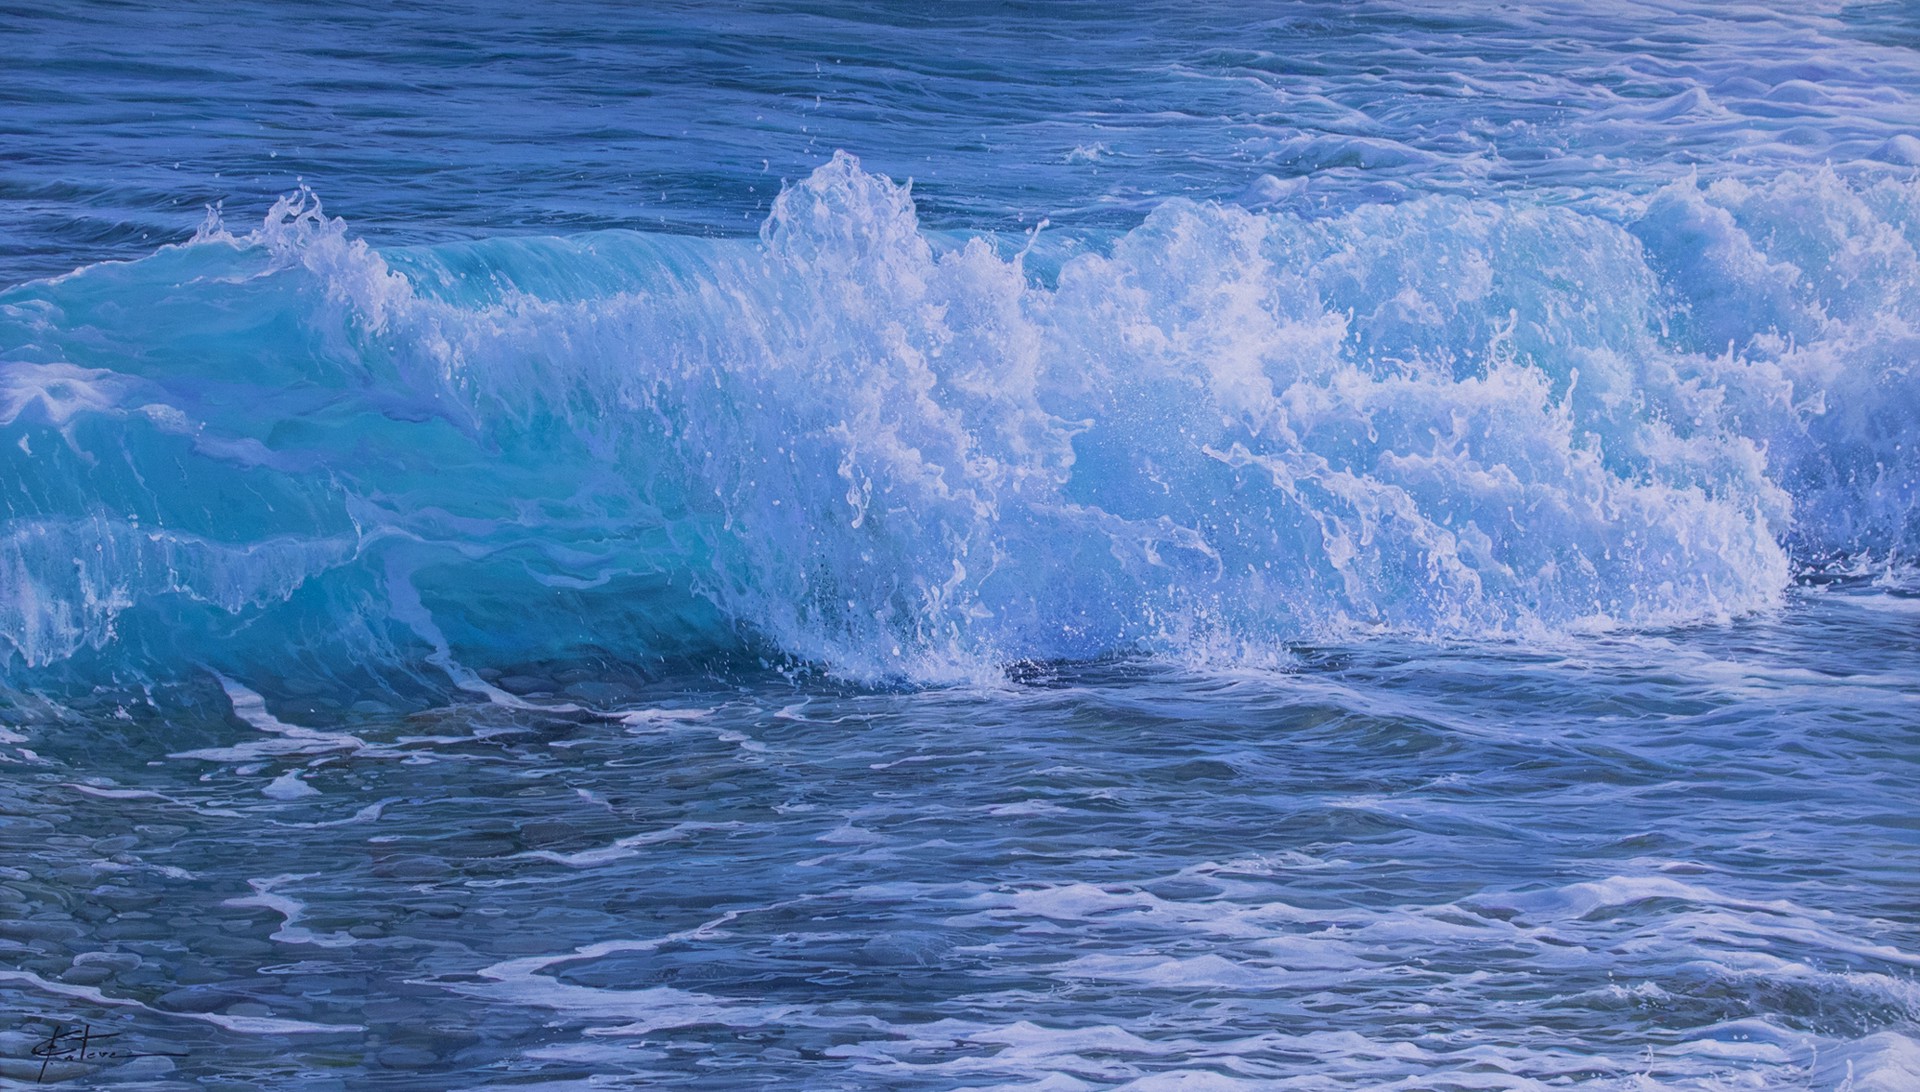 "Pacific Tide" by Marc Esteve